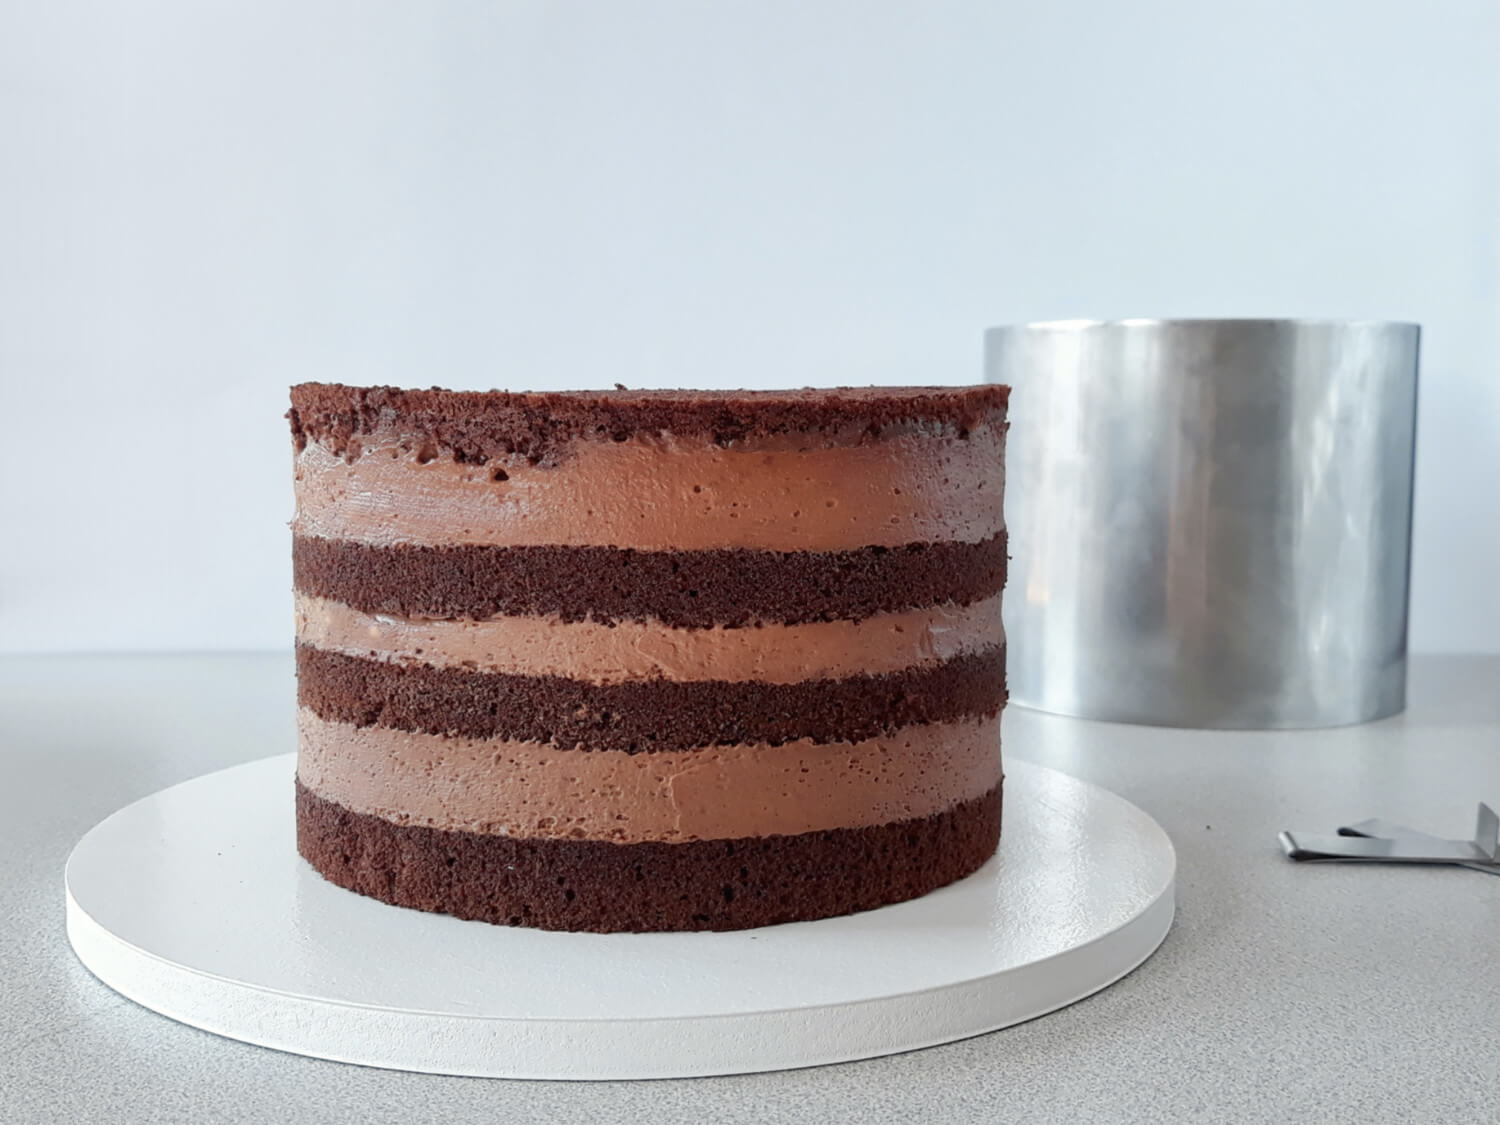 Jak złożyć idealnie prosty tort? Składanie tortu krok po kroku. tutorial, złożony tort